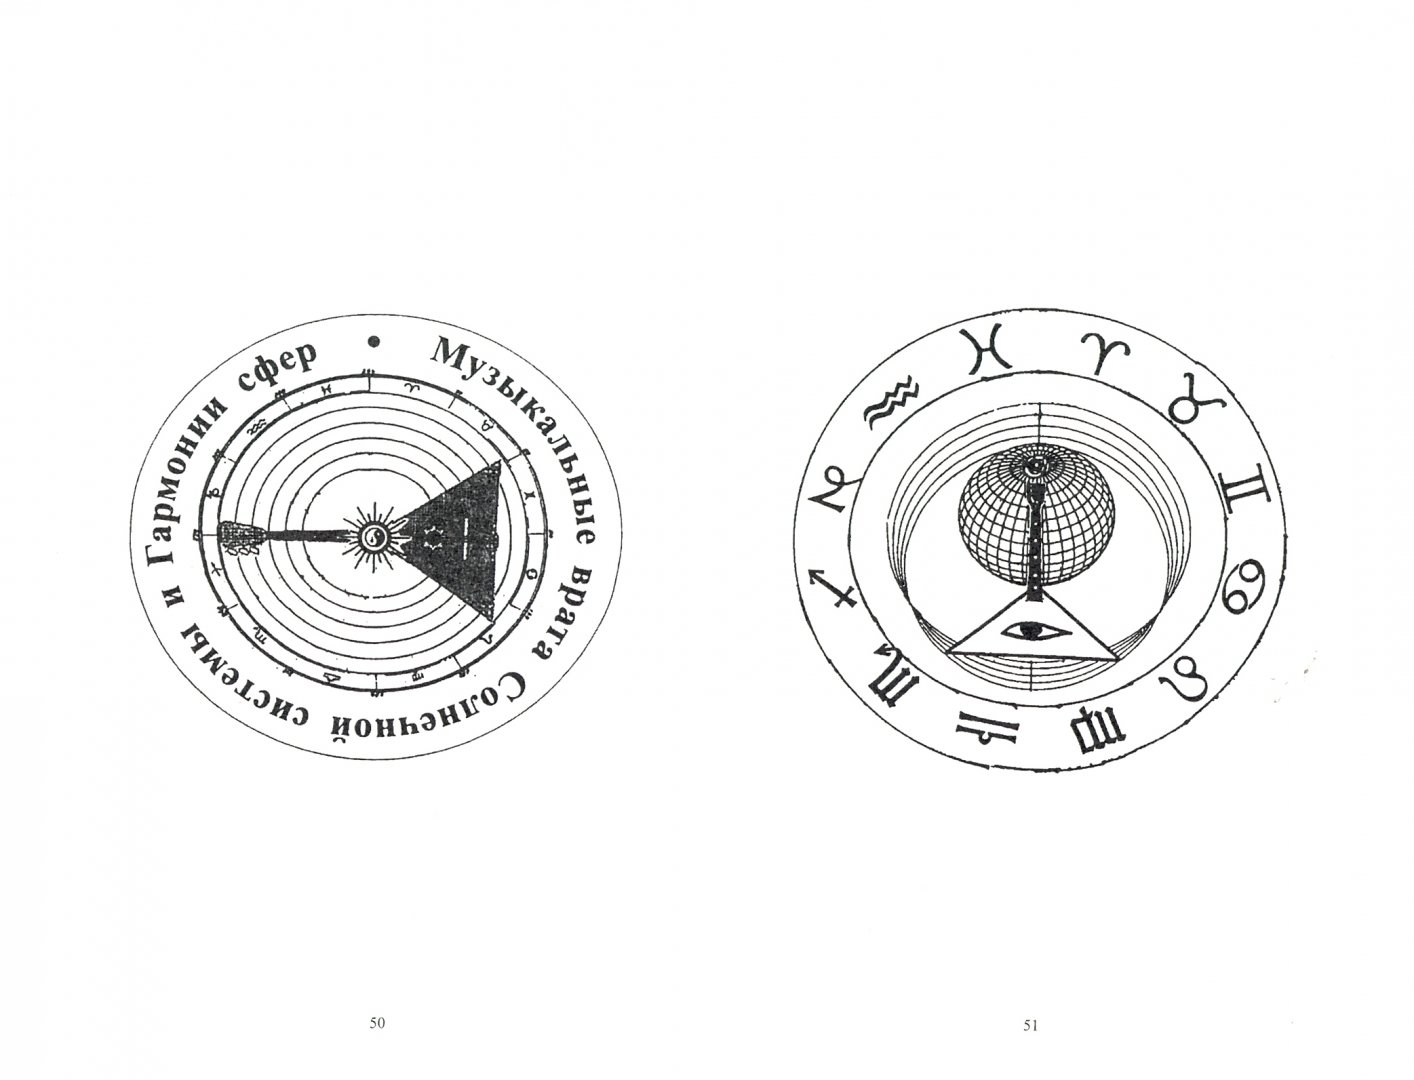 Иллюстрация 1 из 2 для Балалайка - маленькая модель человека и Вселенной - Александр Антонов | Лабиринт - книги. Источник: Лабиринт